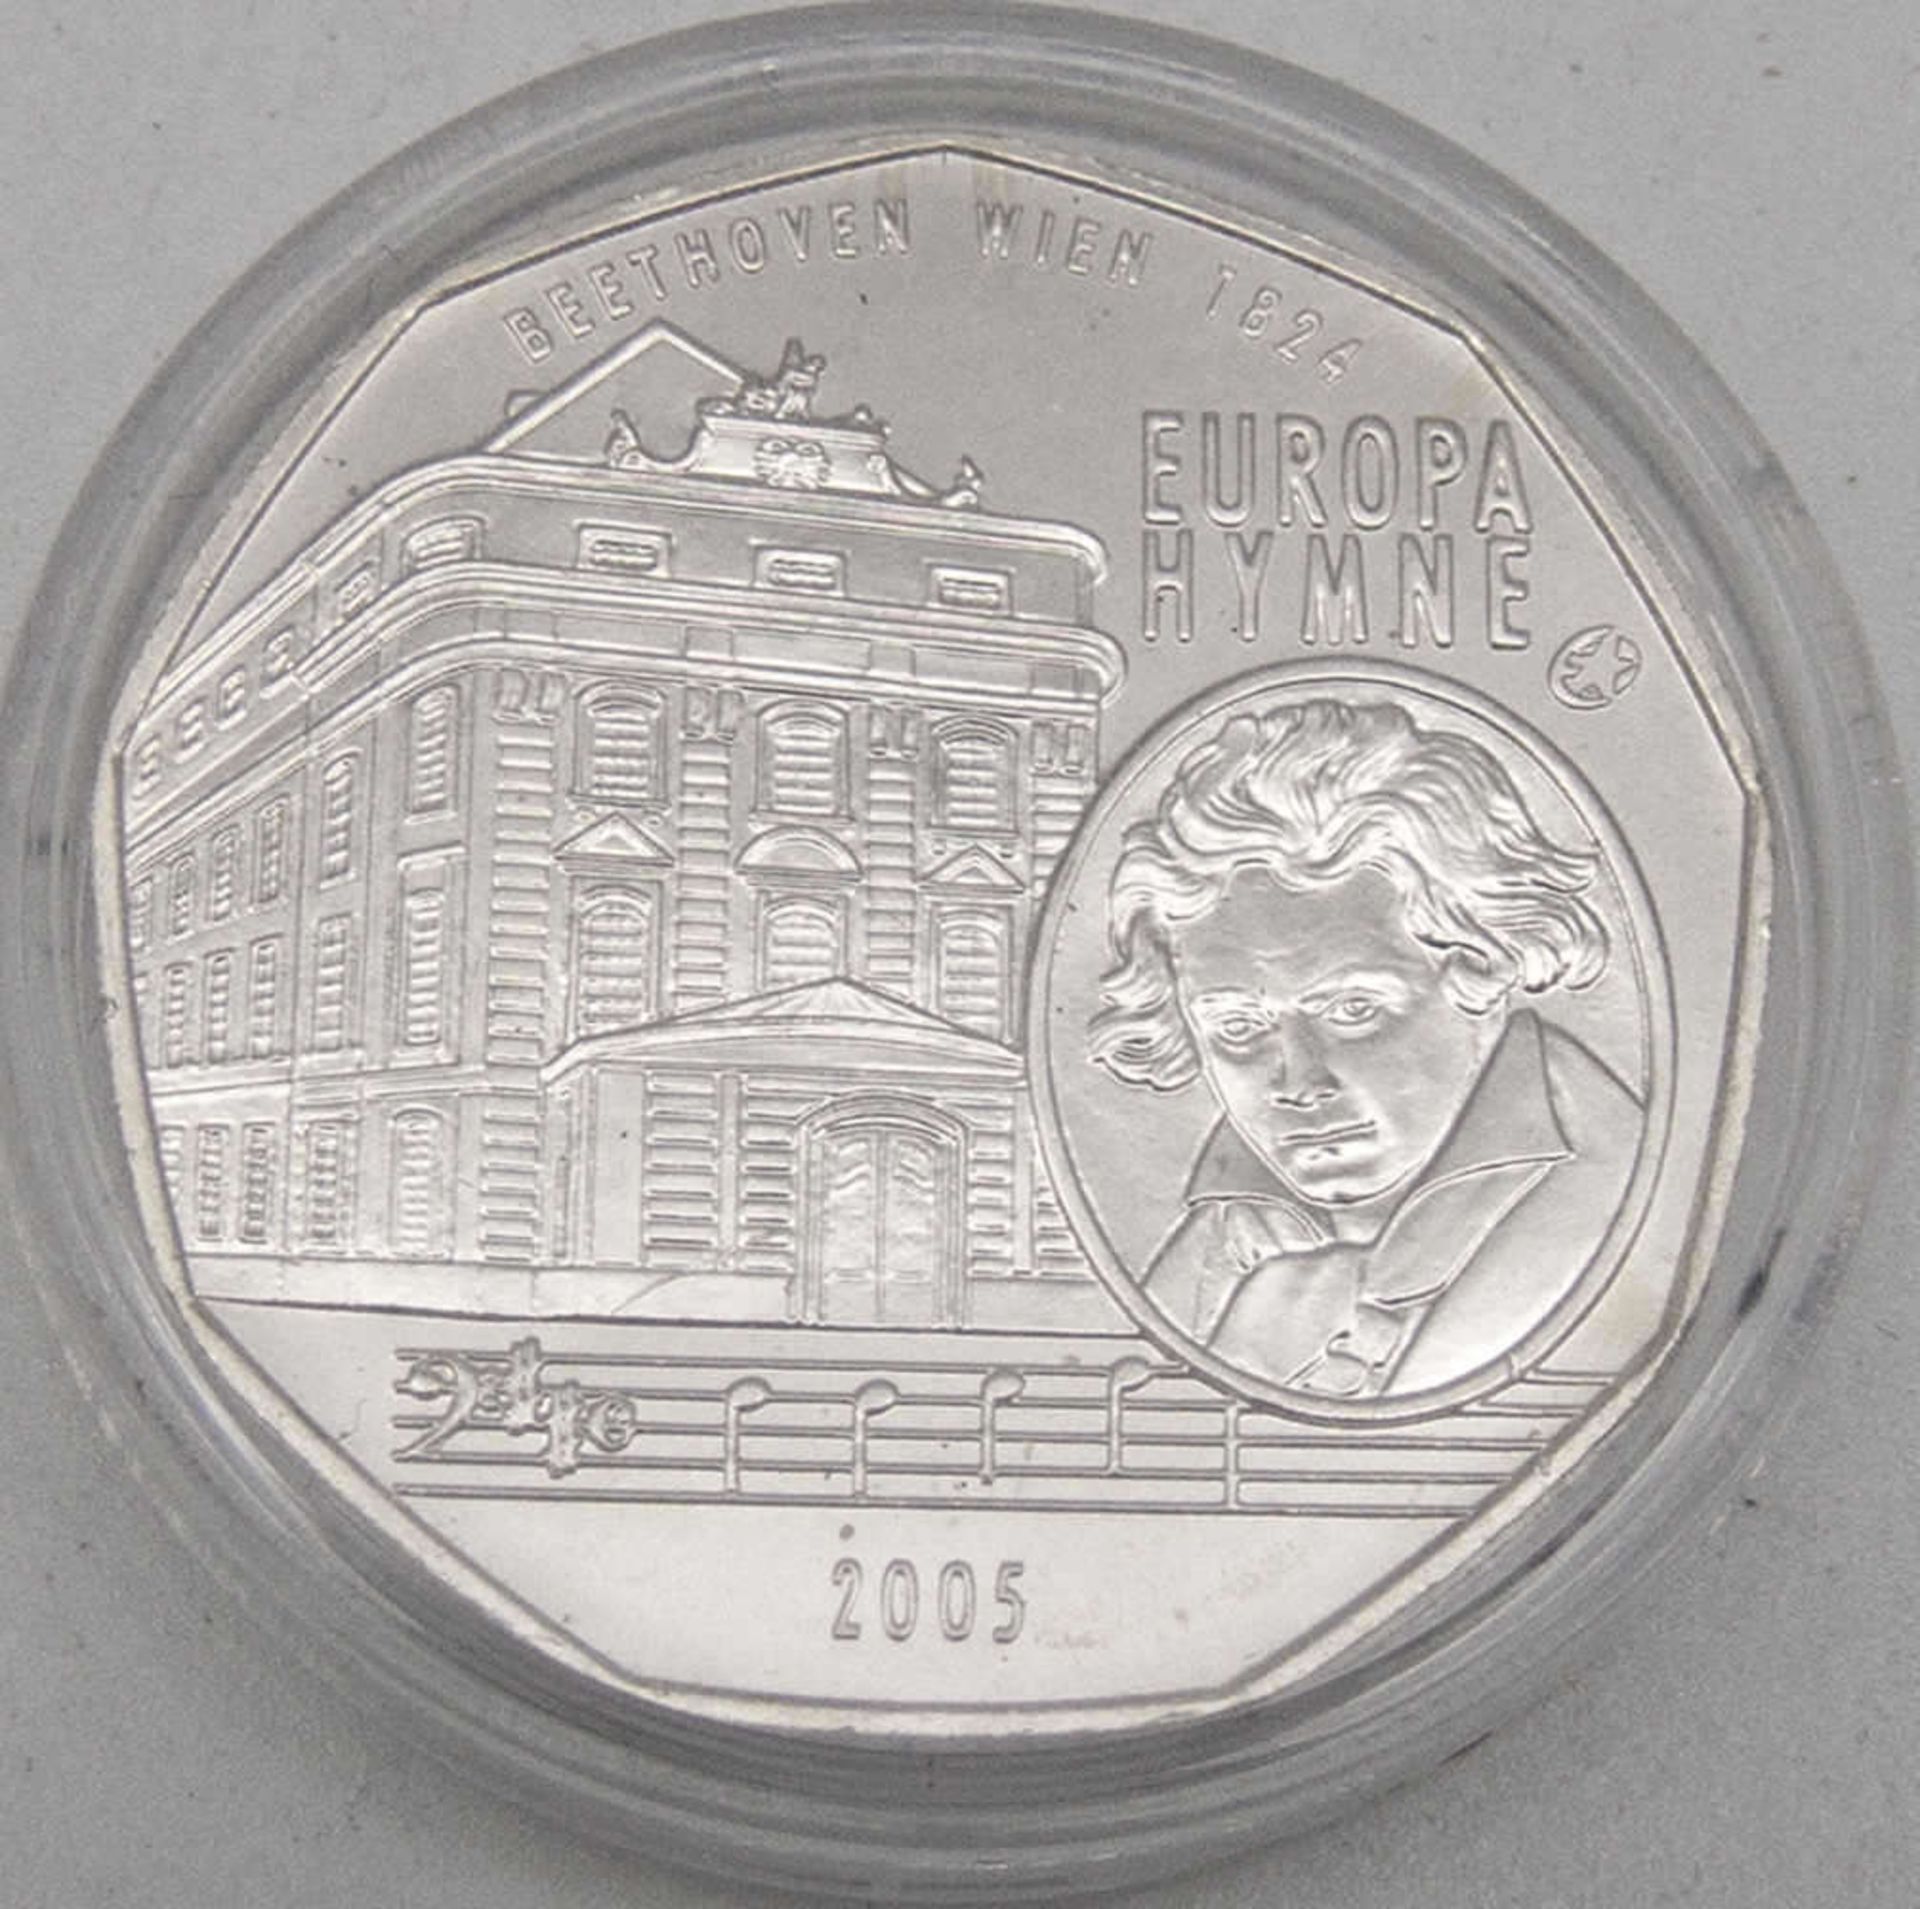 Österreich 2005, 5.- Euro - Silbermünze "Beethoven". Erhaltung: stgl.